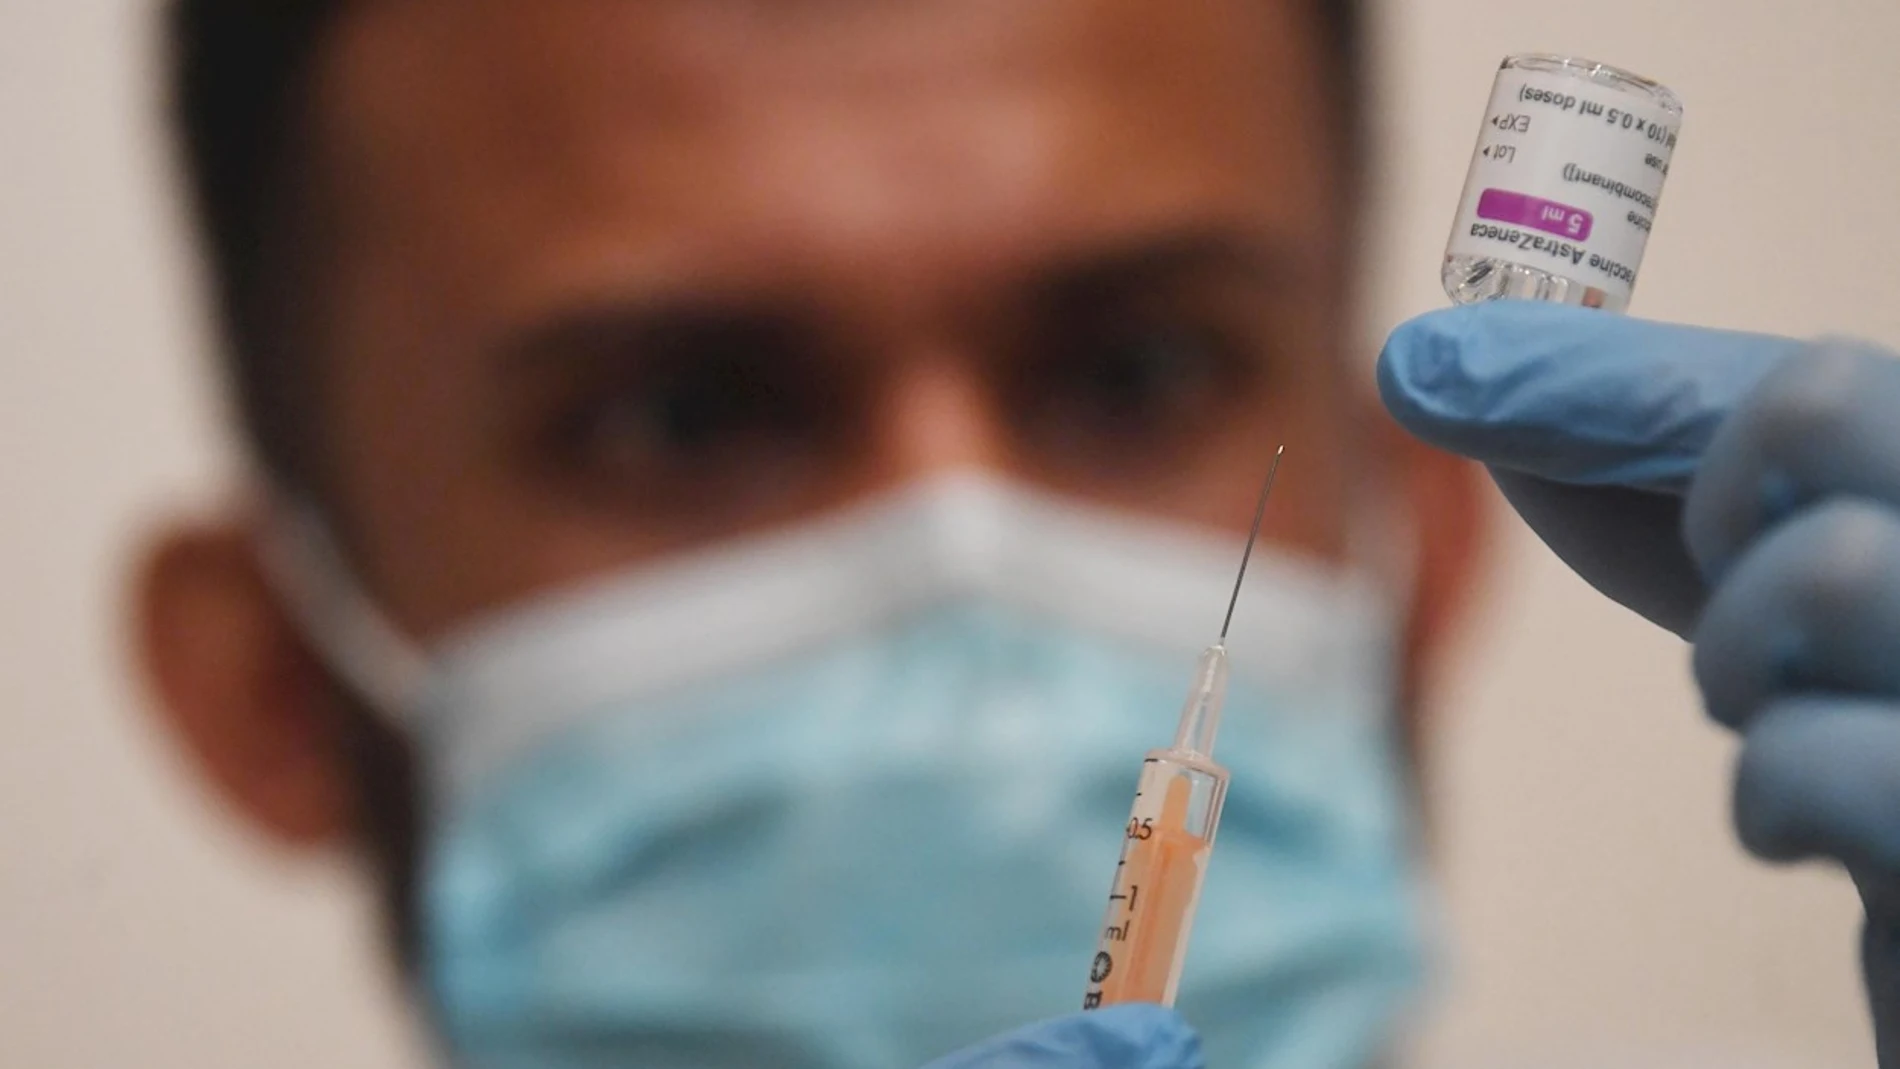 Un sanitario prepara una dosis de la vacuna anti covi-19 en un centro de salud de Londres